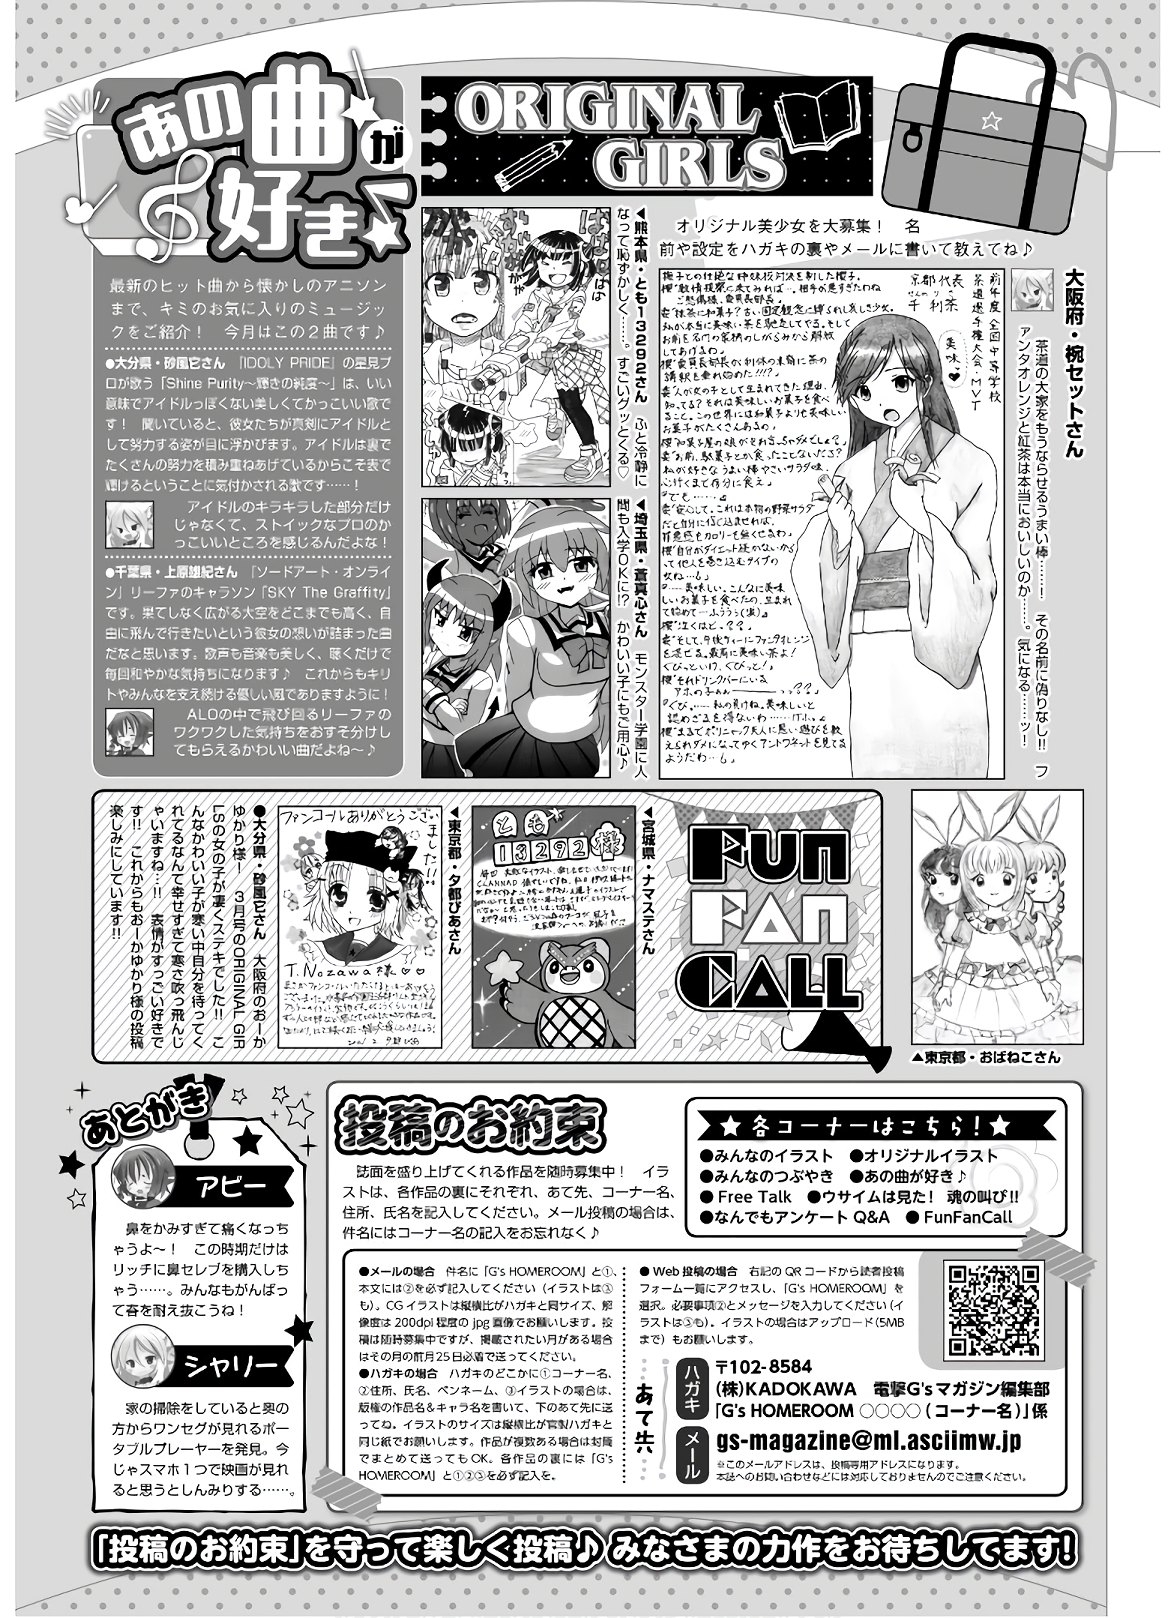 Dengeki G's Magazine #286 - May 2021 140